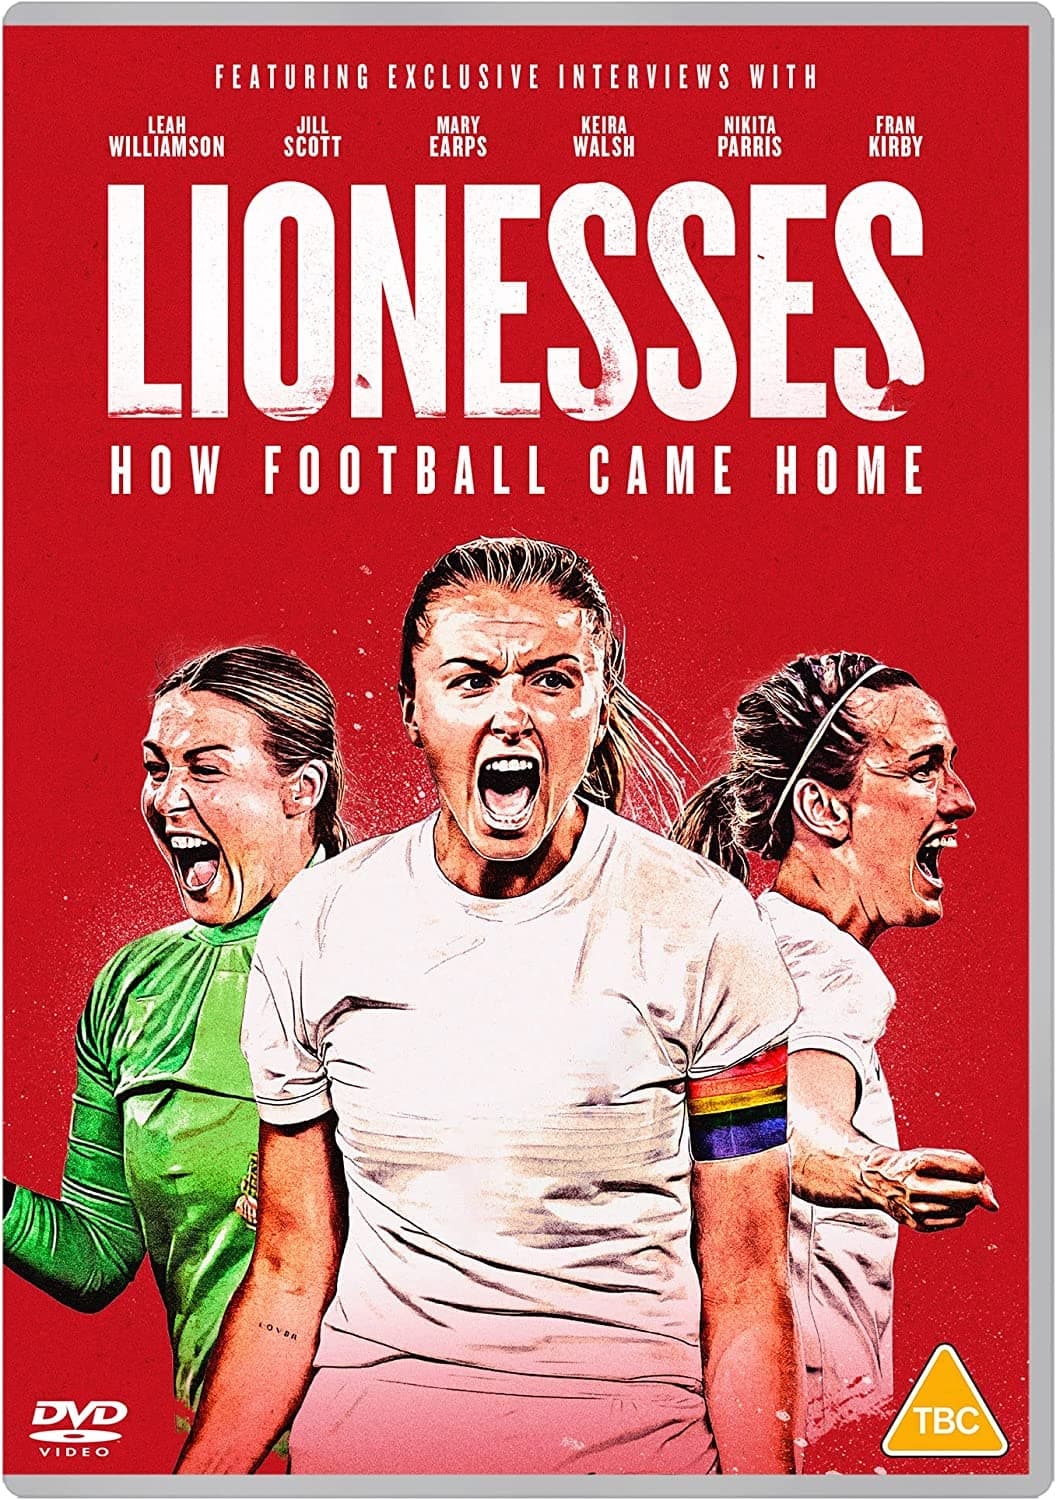 Lionesses: How Football Came Home